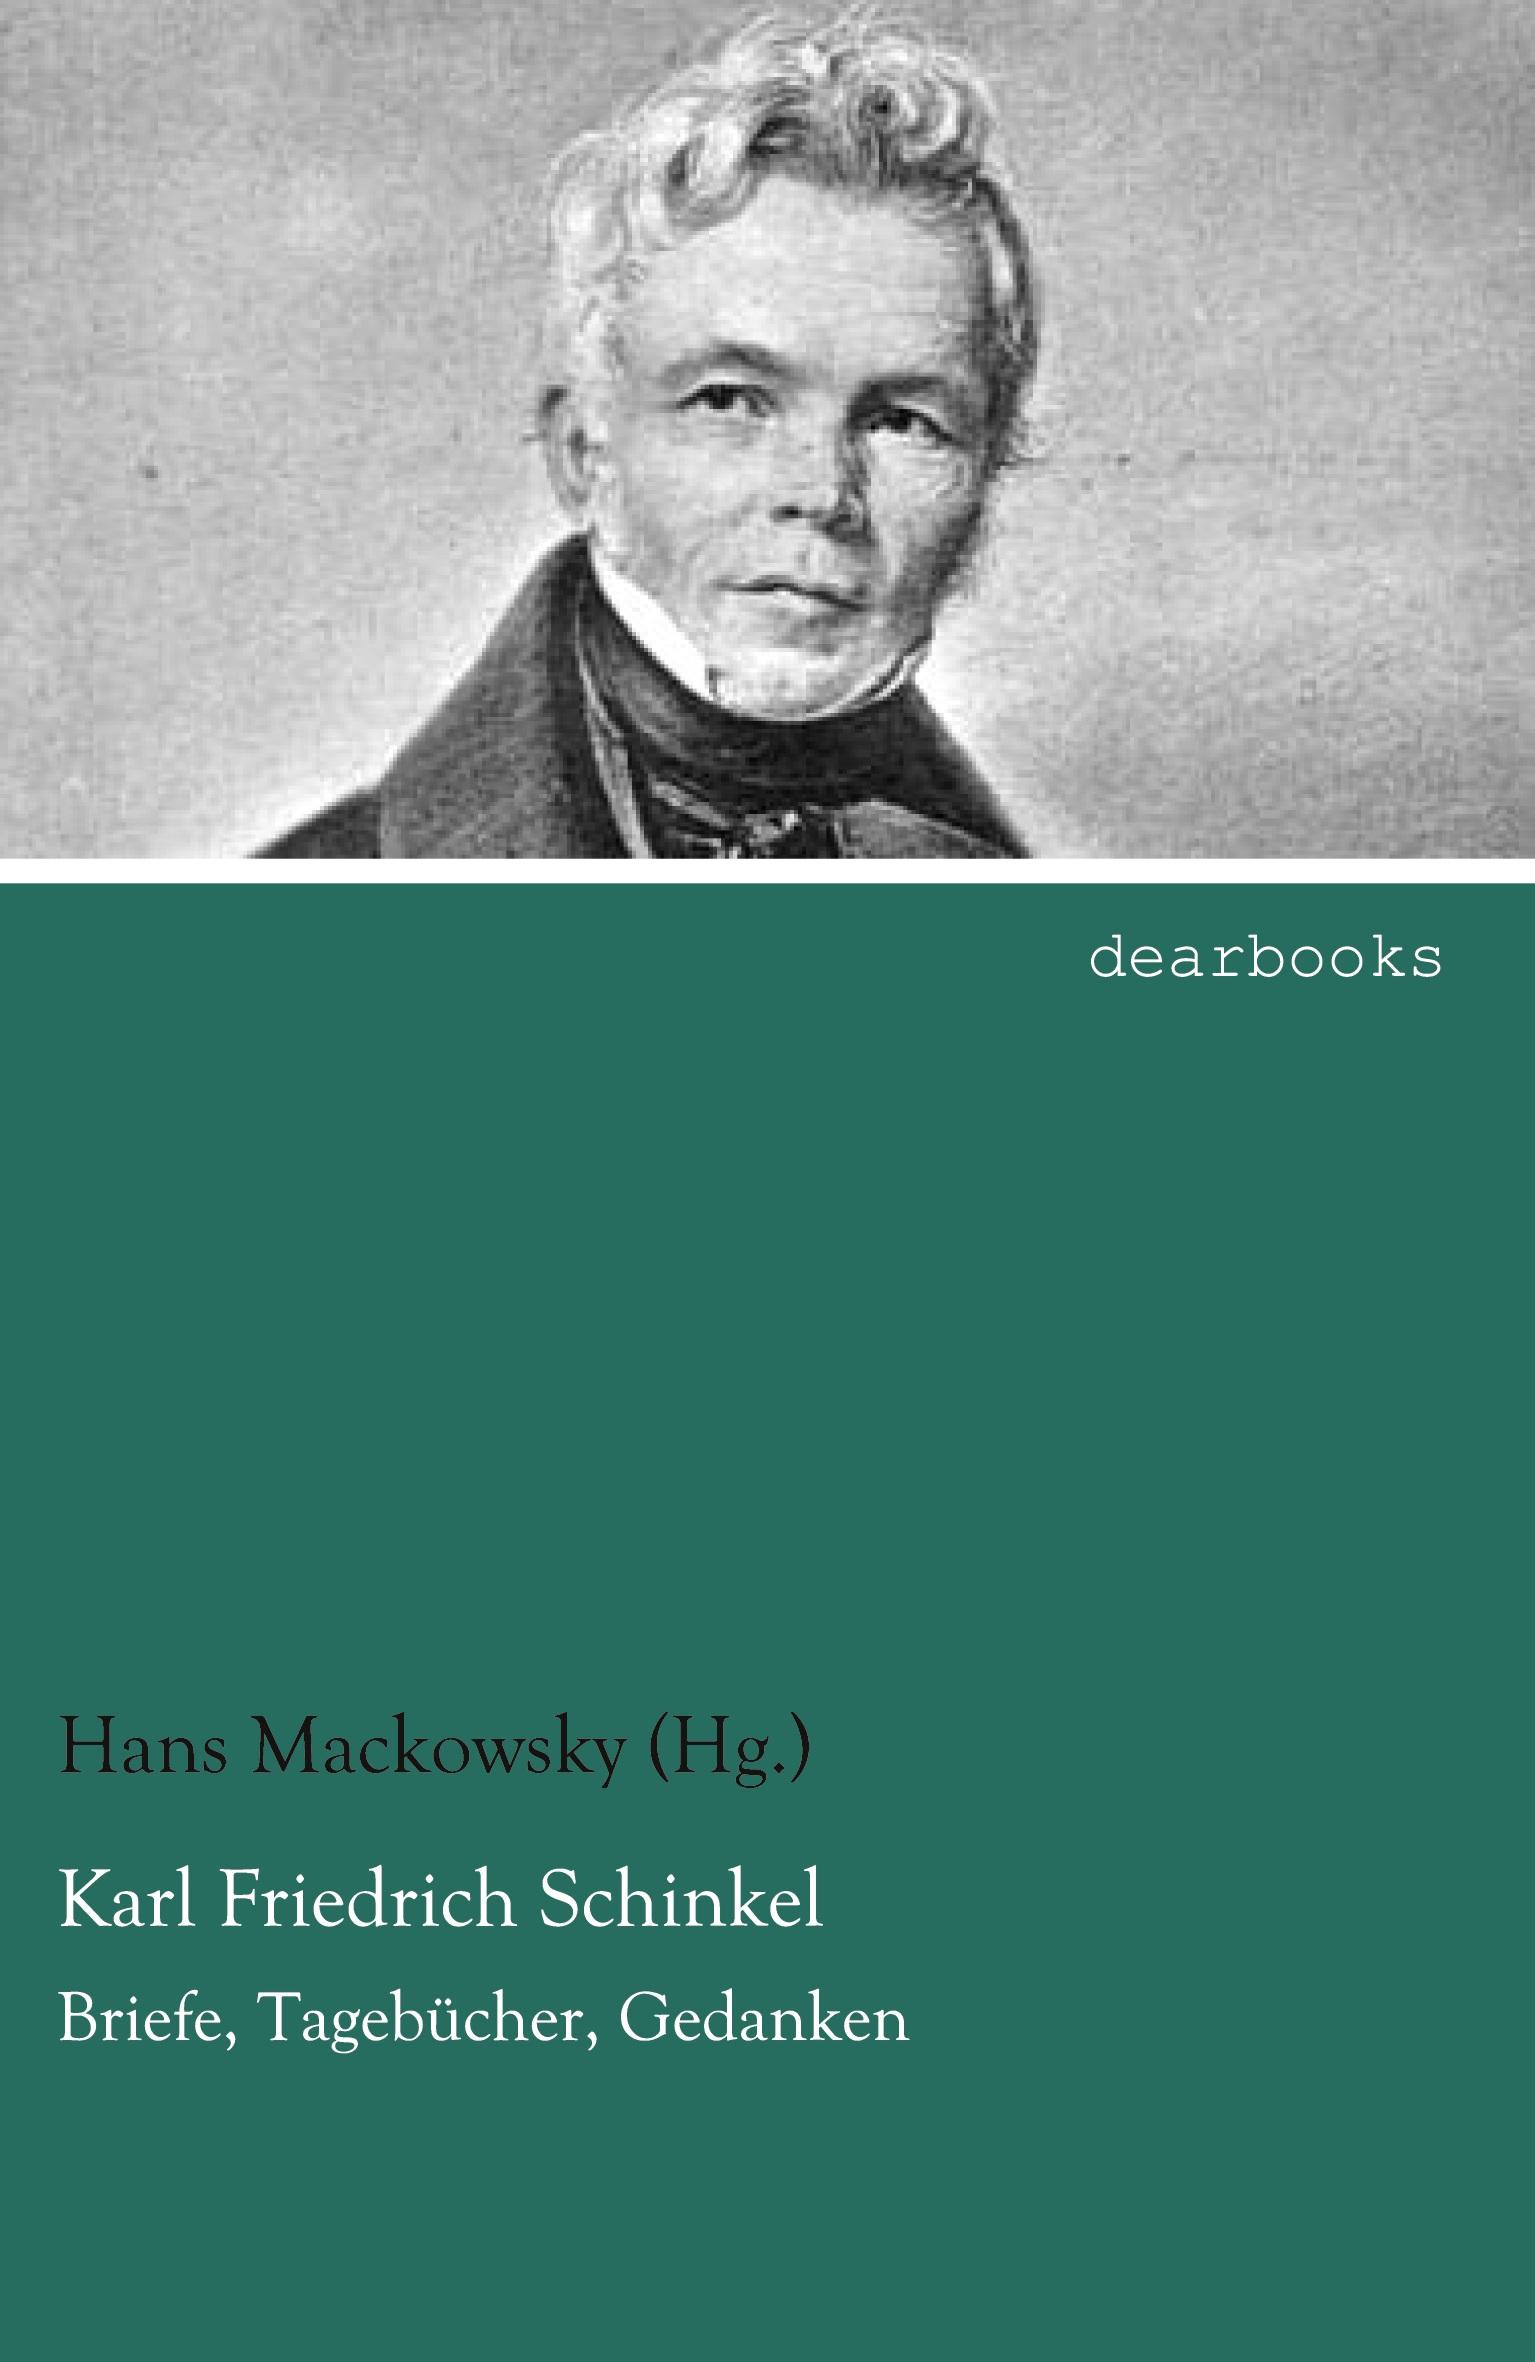 Karl Friedrich Schinkel | Briefe, Tagebücher, Gedanken | Hans Mackowsky (Hg. | Taschenbuch | Paperback | 272 S. | Deutsch | 2021 | dearbooks | EAN 9783954558254 - Mackowsky (Hg., Hans